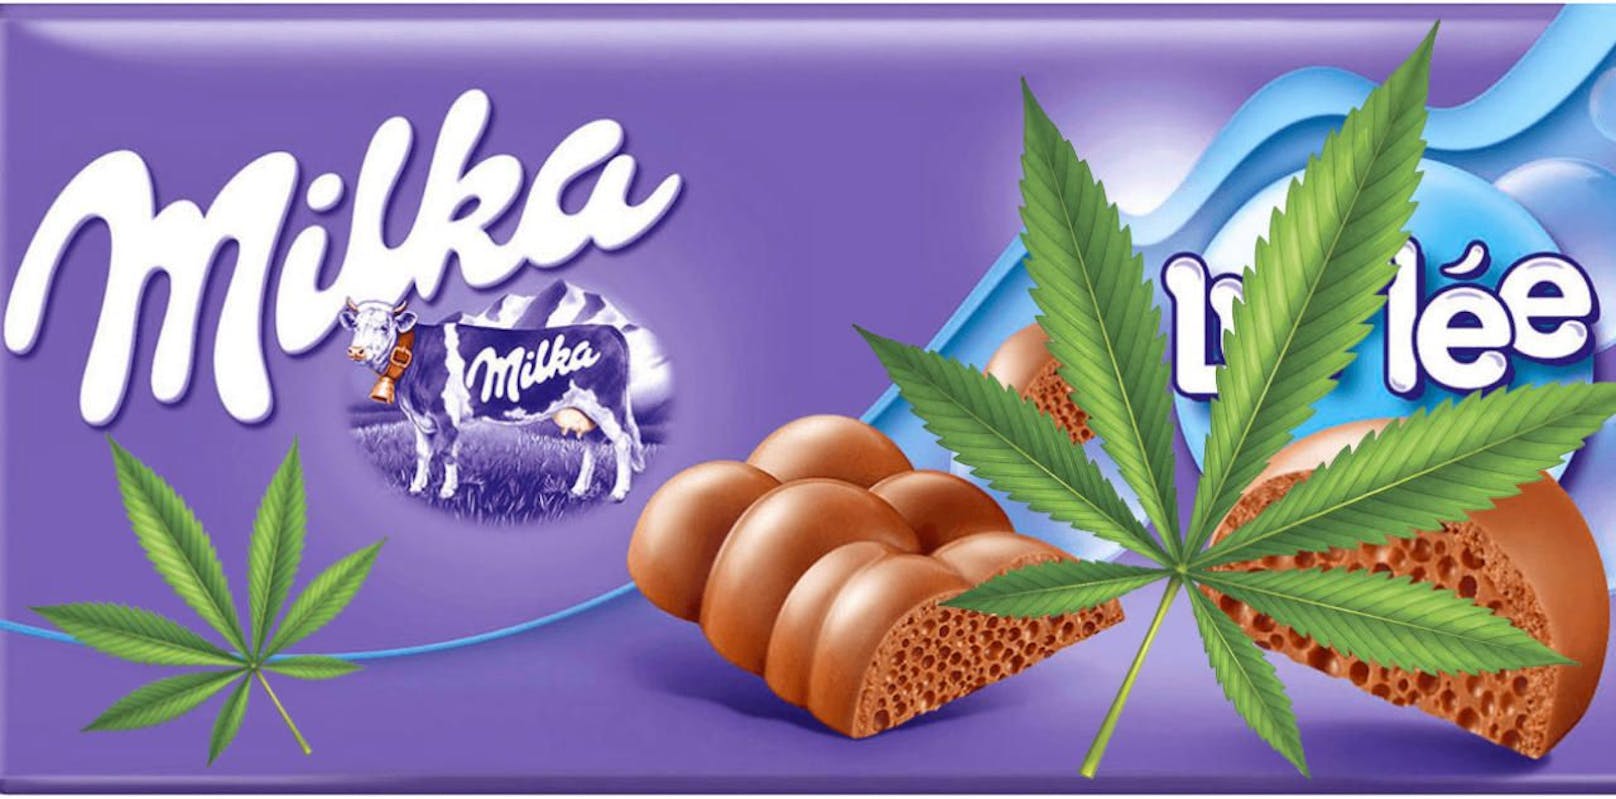 Bald Cannabis-Snacks von Milka-Mutter?